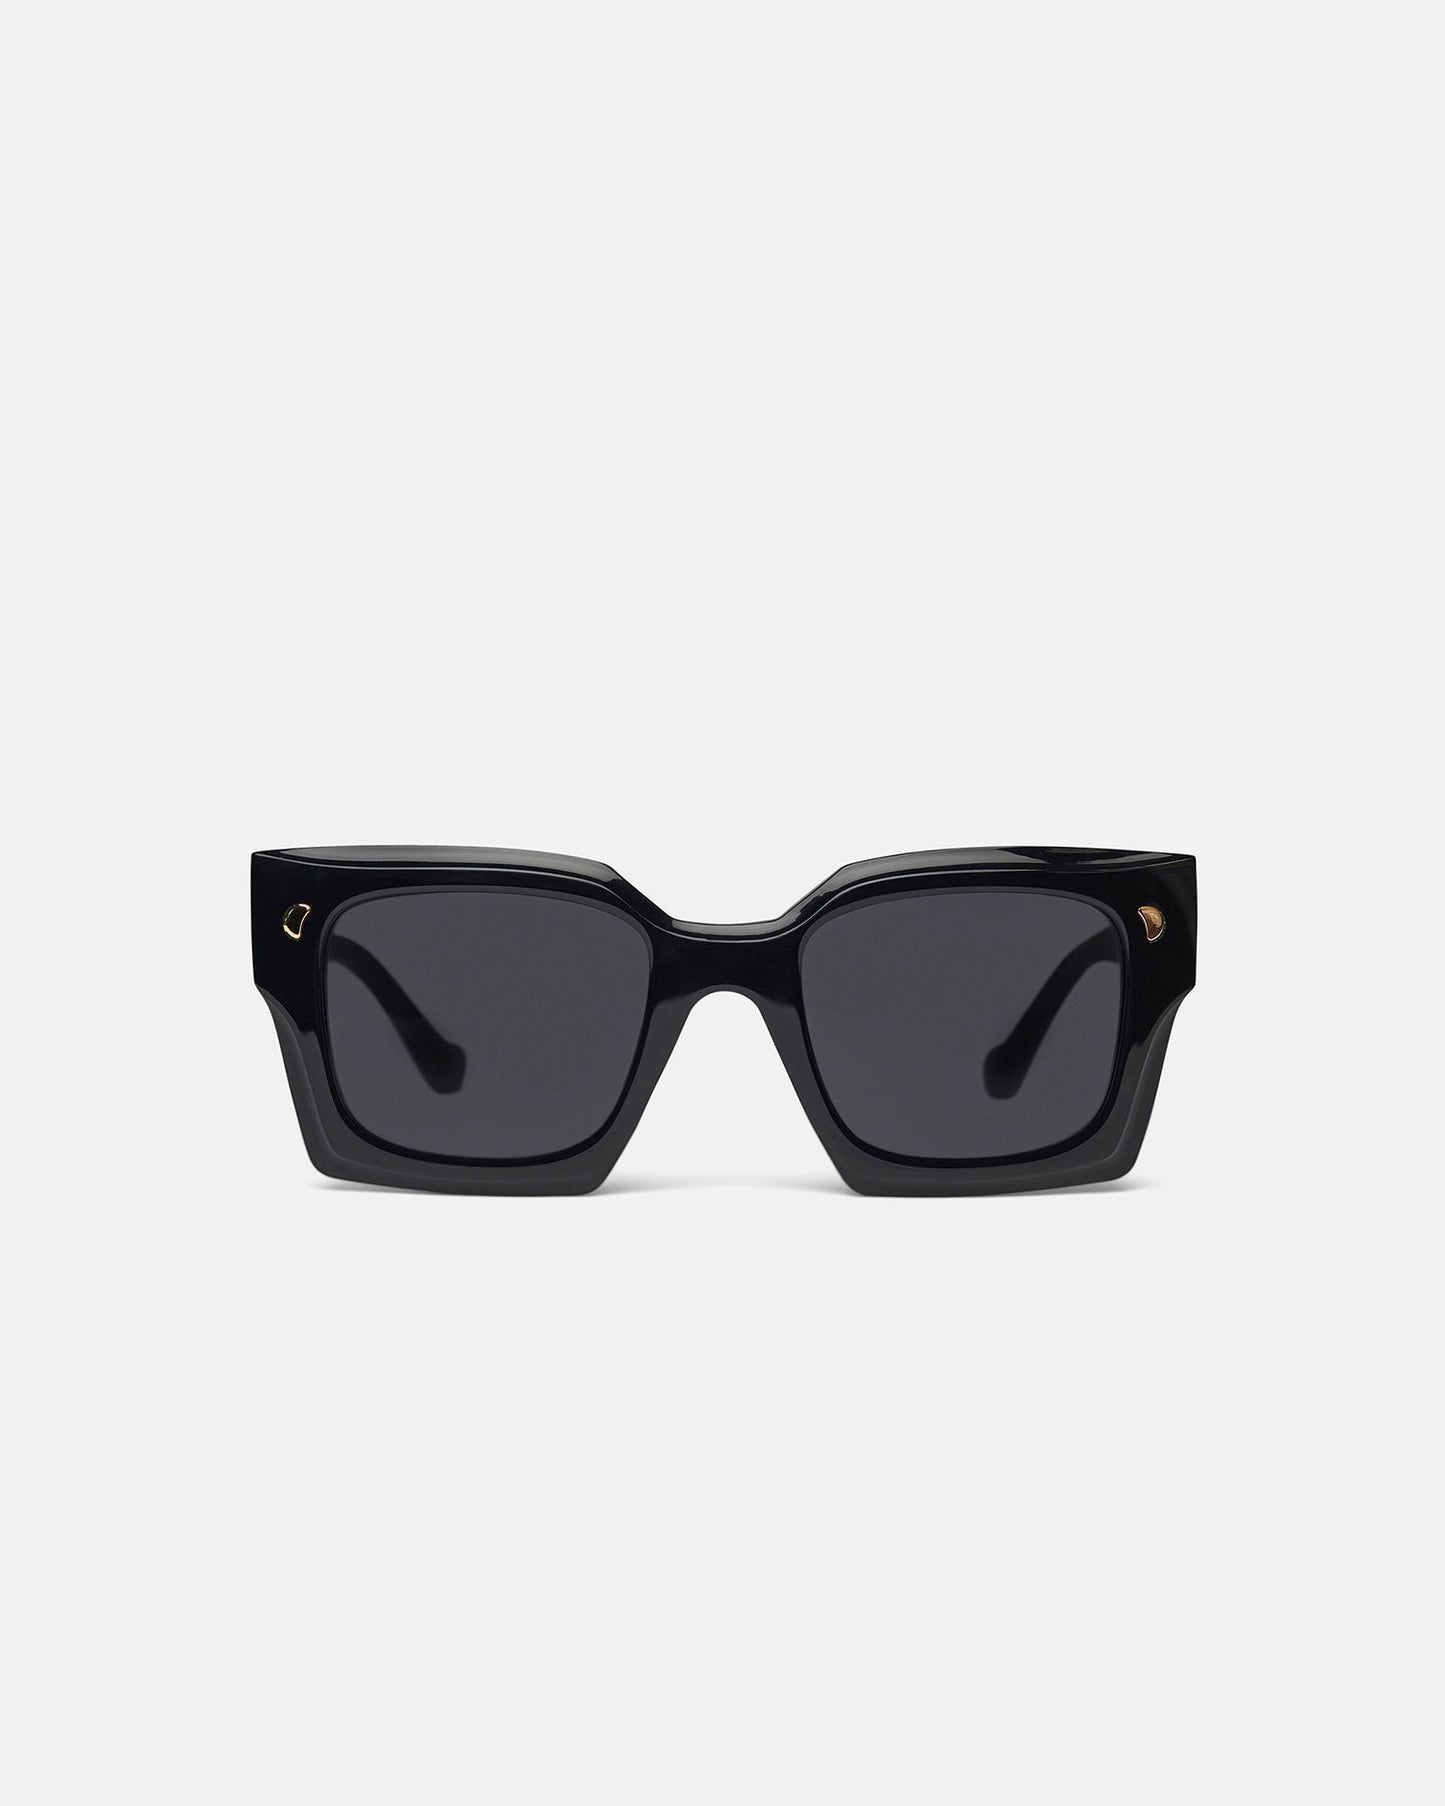 Cordia - Bio-Plastic Sunglasses - Black